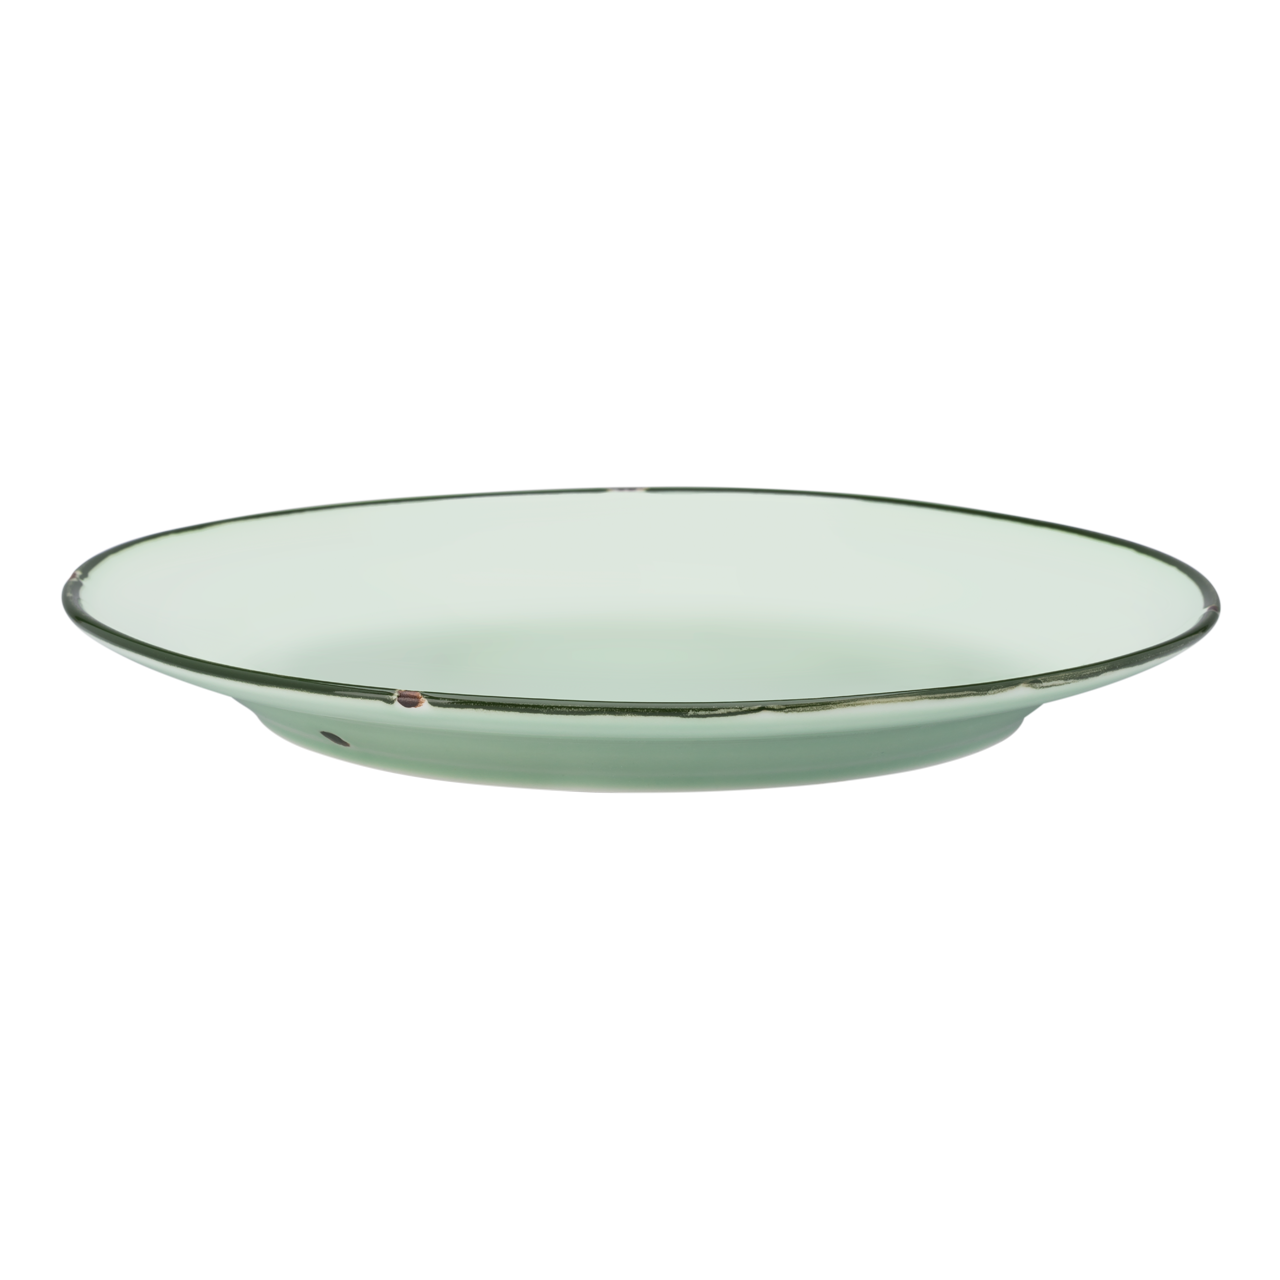 Tin Tin - Round Plate